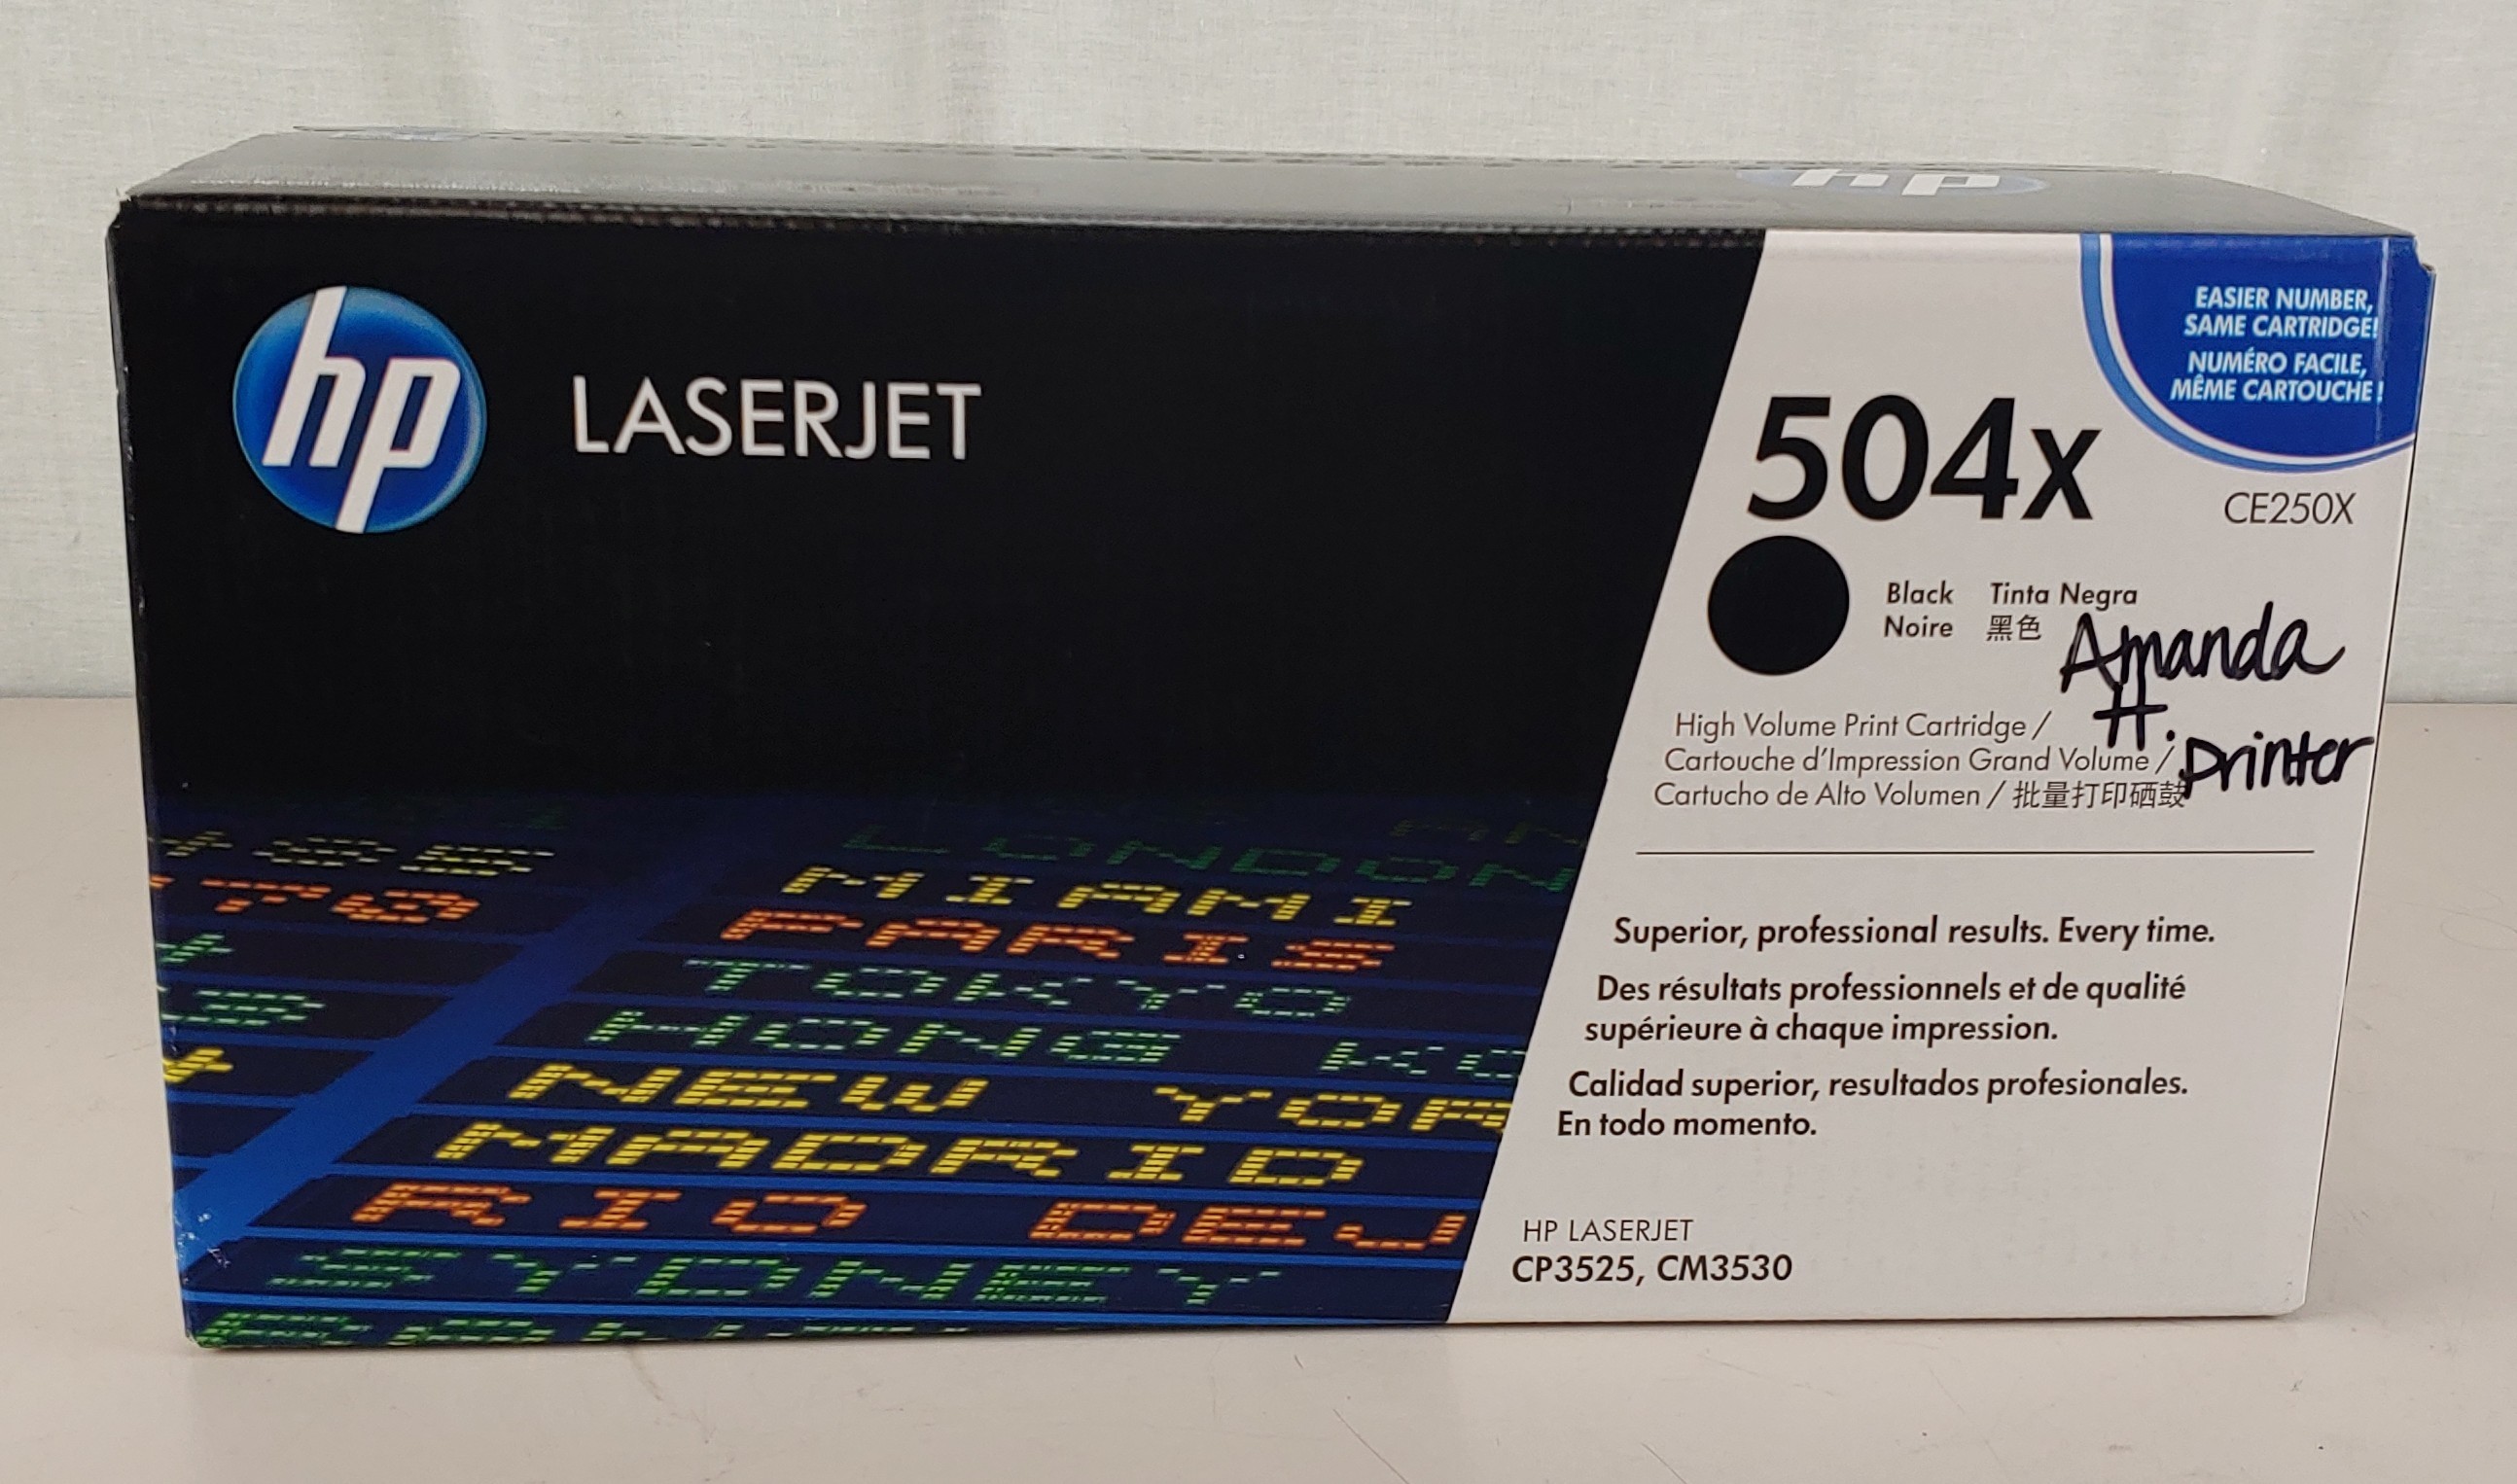 NEW! SEALED HP LaserJet 504x CE250X Black Toner Cartridge